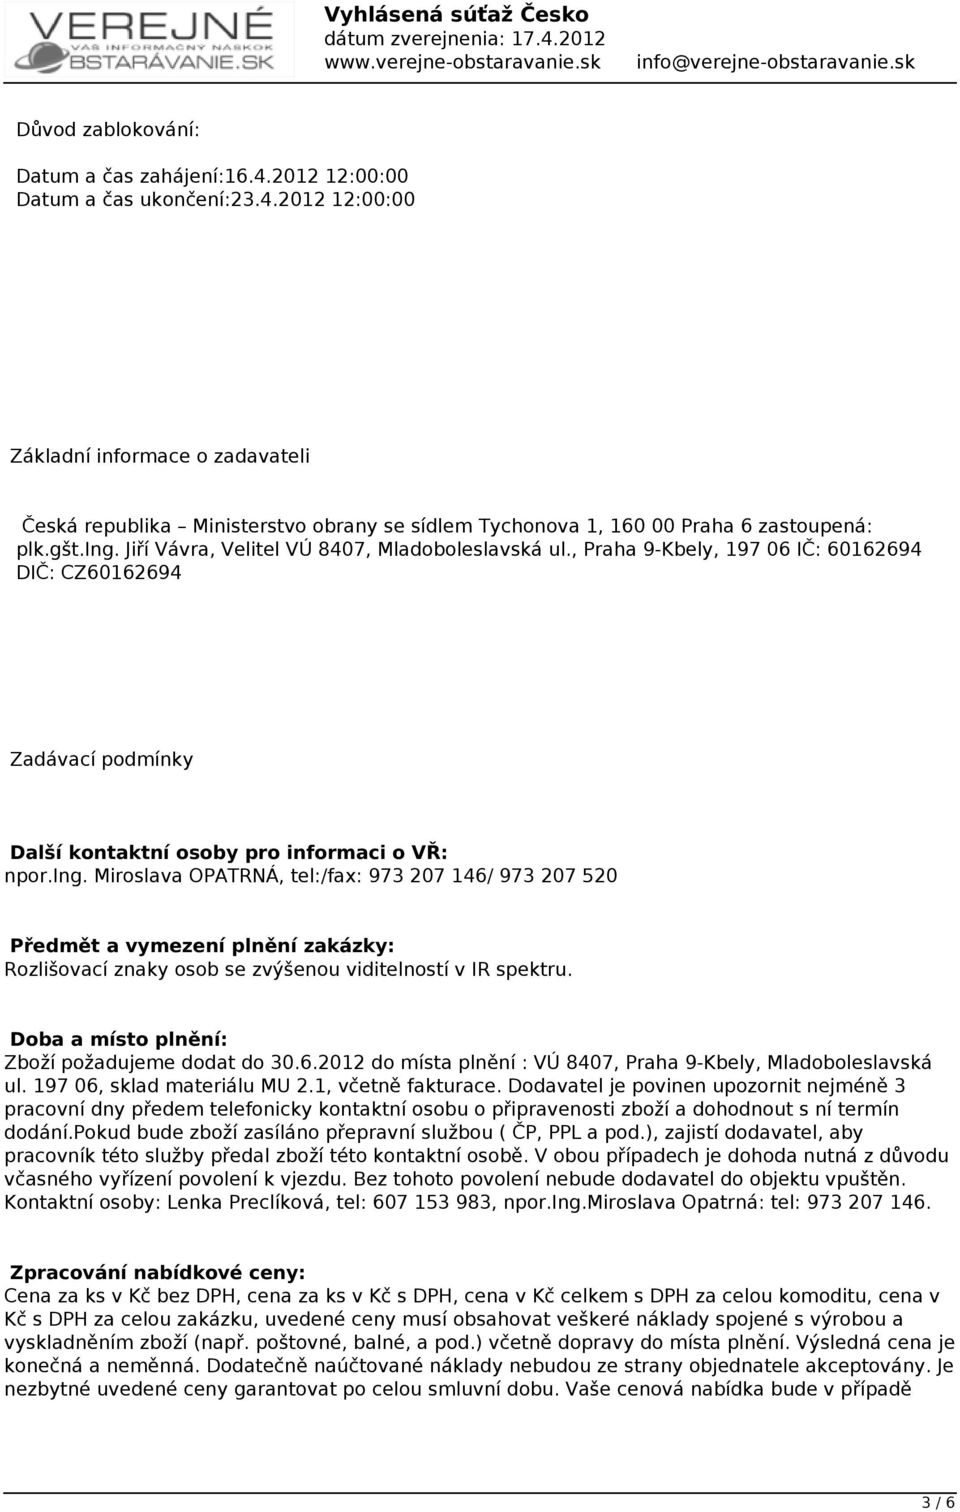 Doba a místo plnění: Zboží požadujeme dodat do 30.6.2012 do místa plnění : VÚ 8407, Praha 9-Kbely, Mladoboleslavská ul. 197 06, sklad materiálu MU 2.1, včetně fakturace.